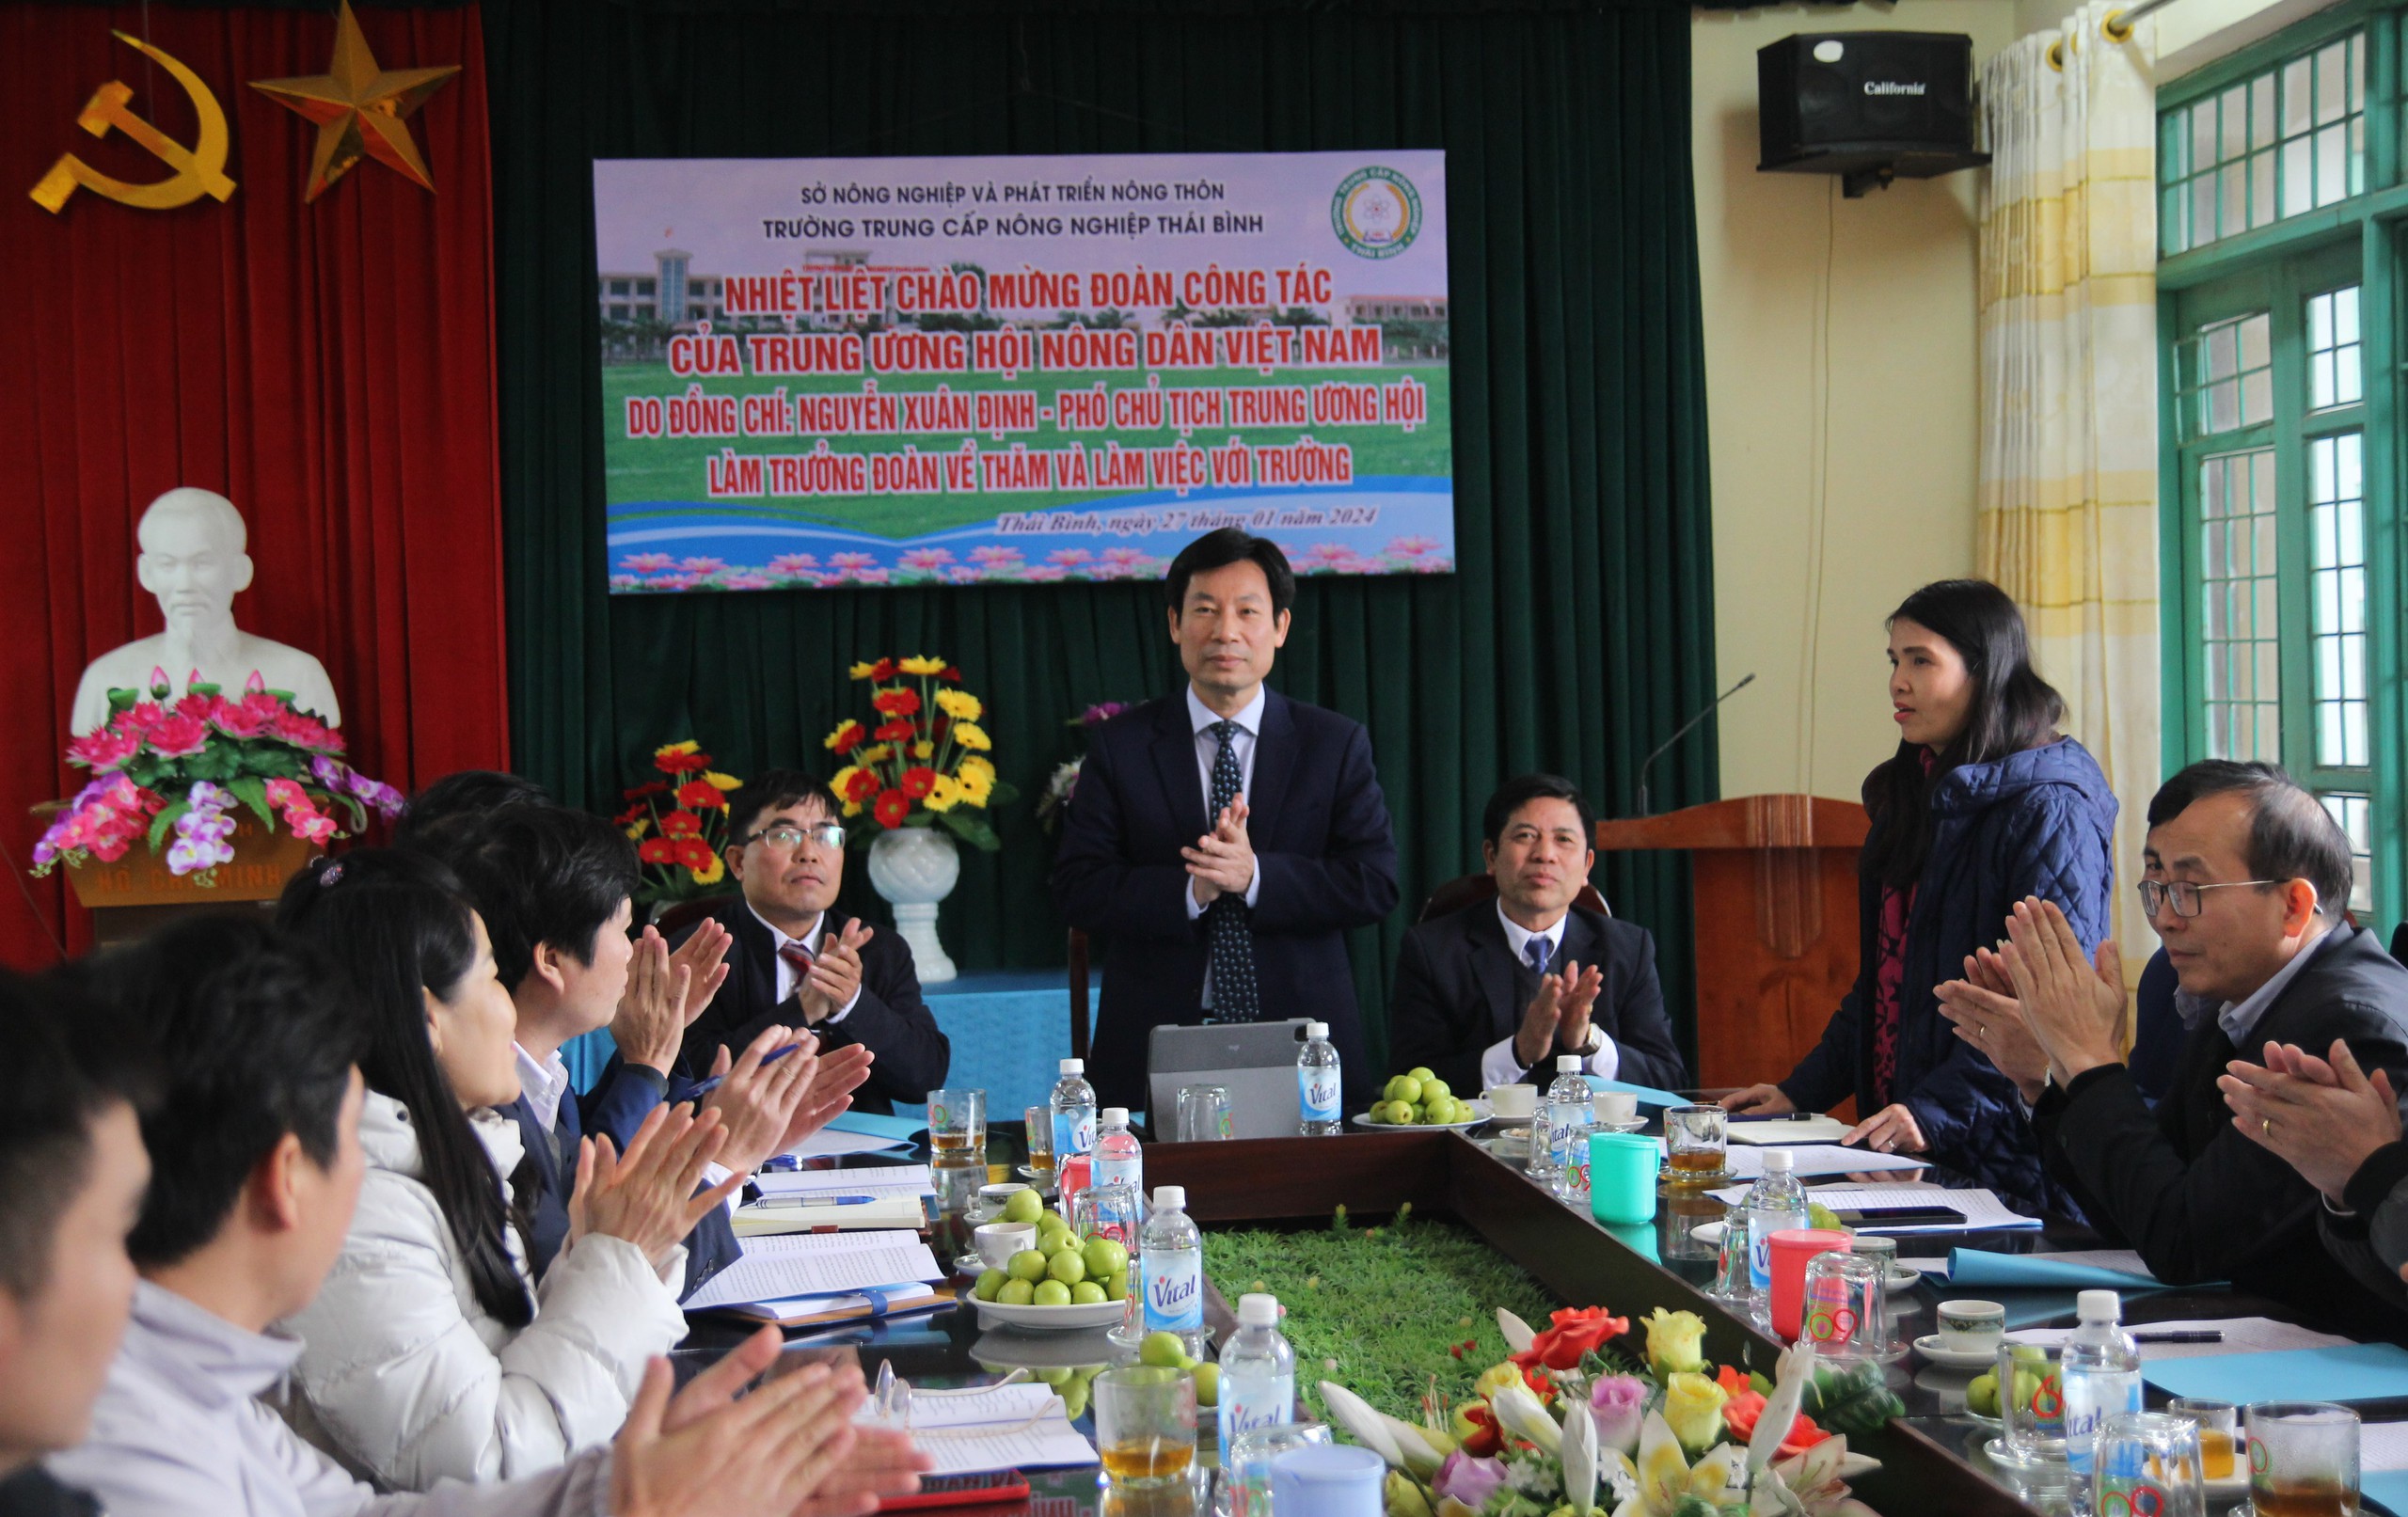 Phó Chủ tịch TƯ Hội NDVN Nguyễn Xuân Định thăm, làm việc với Trường trung cấp Nông nghiệp Thái Bình- Ảnh 1.